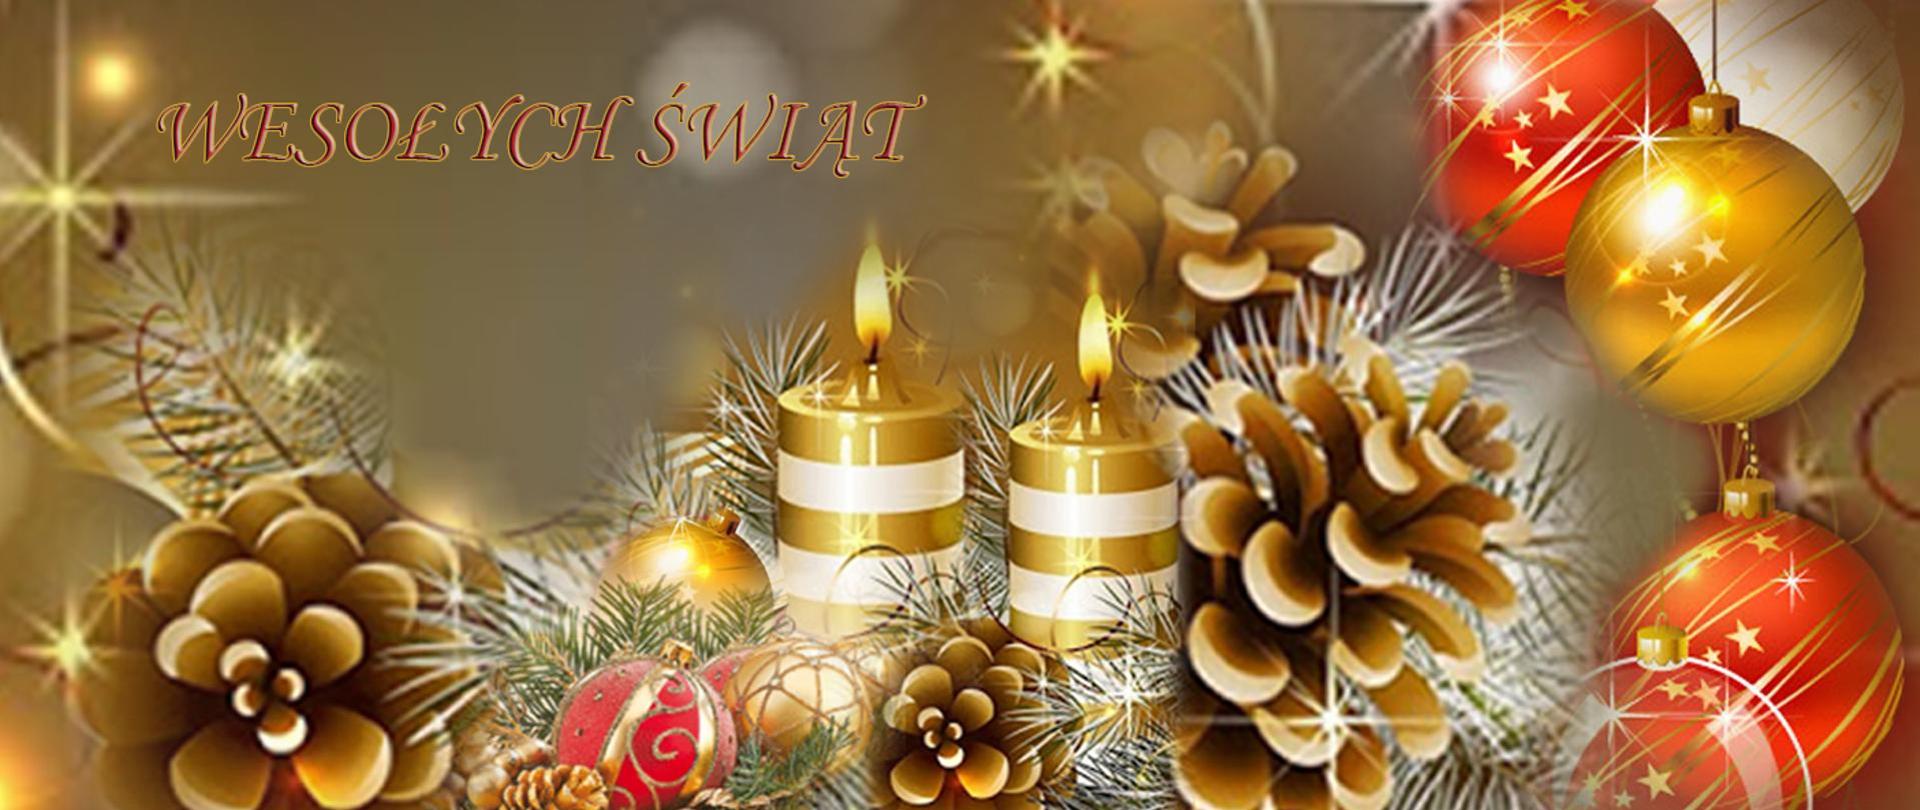 Kartka świąteczna przedstawiająca świece, bombki oraz szyszki.